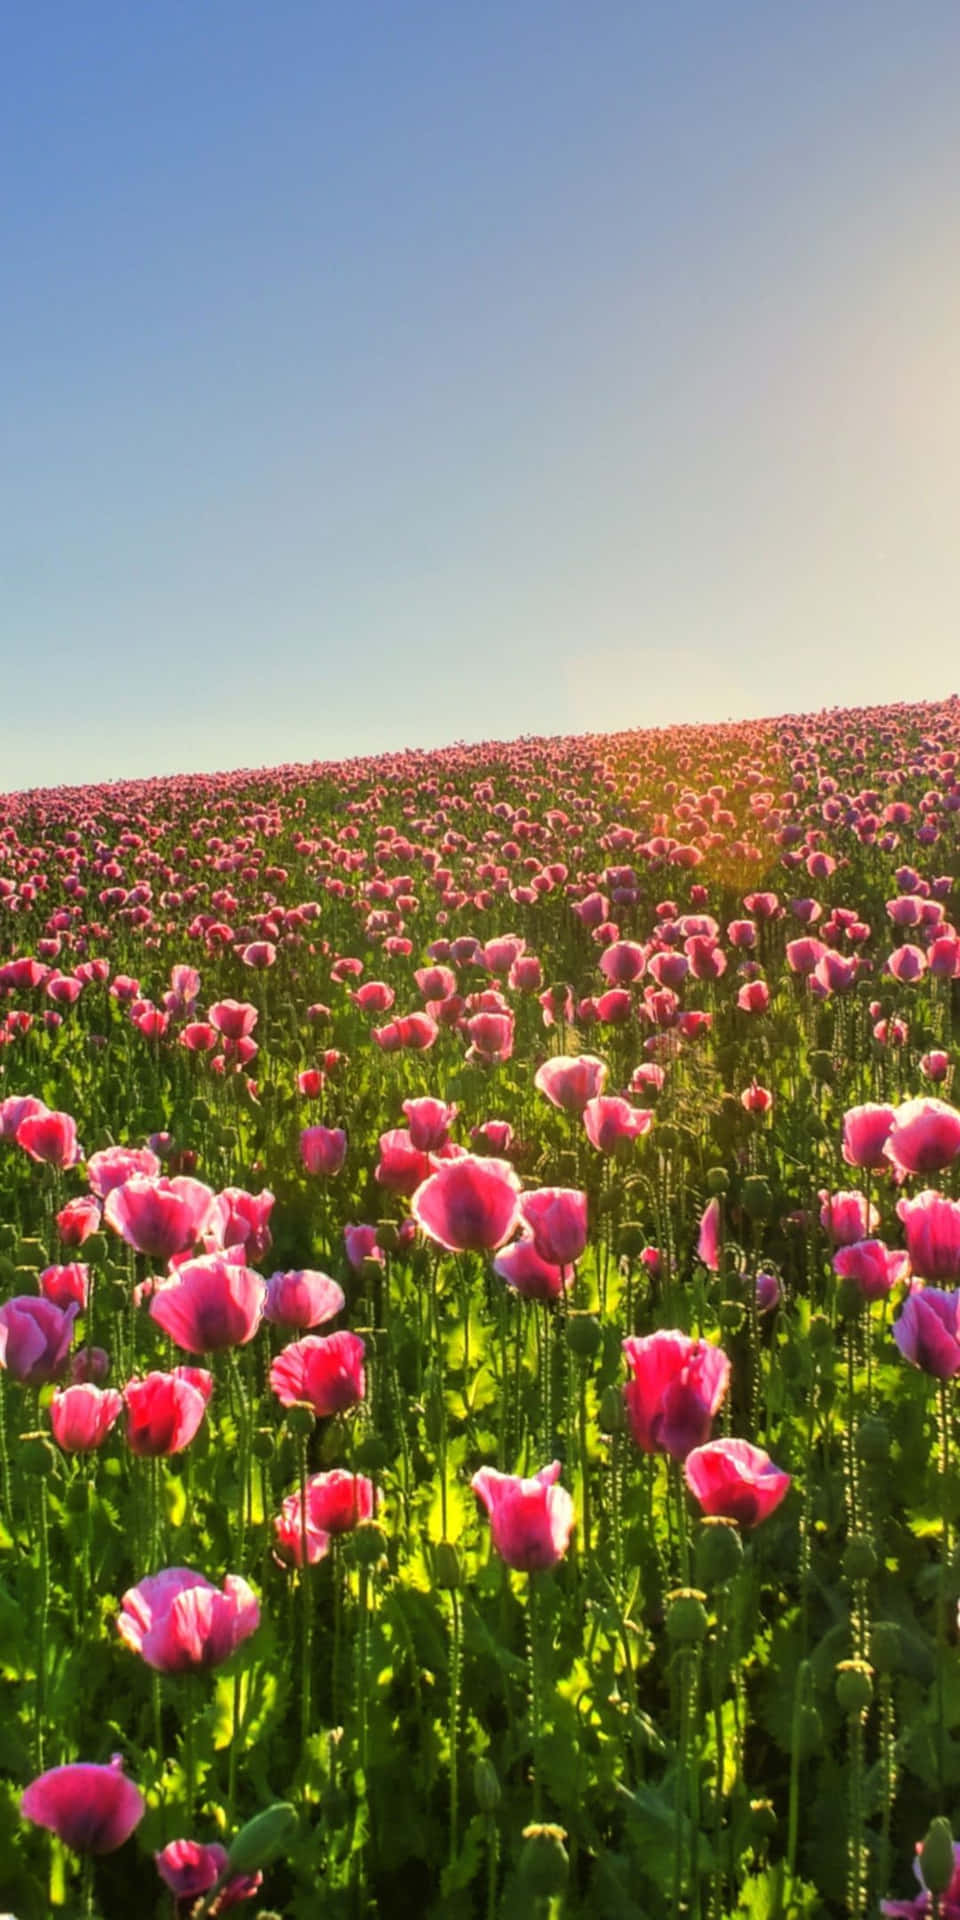 Fondode Pantalla De Pixel 3 Con Flores En Un Campo De Tulipanes.